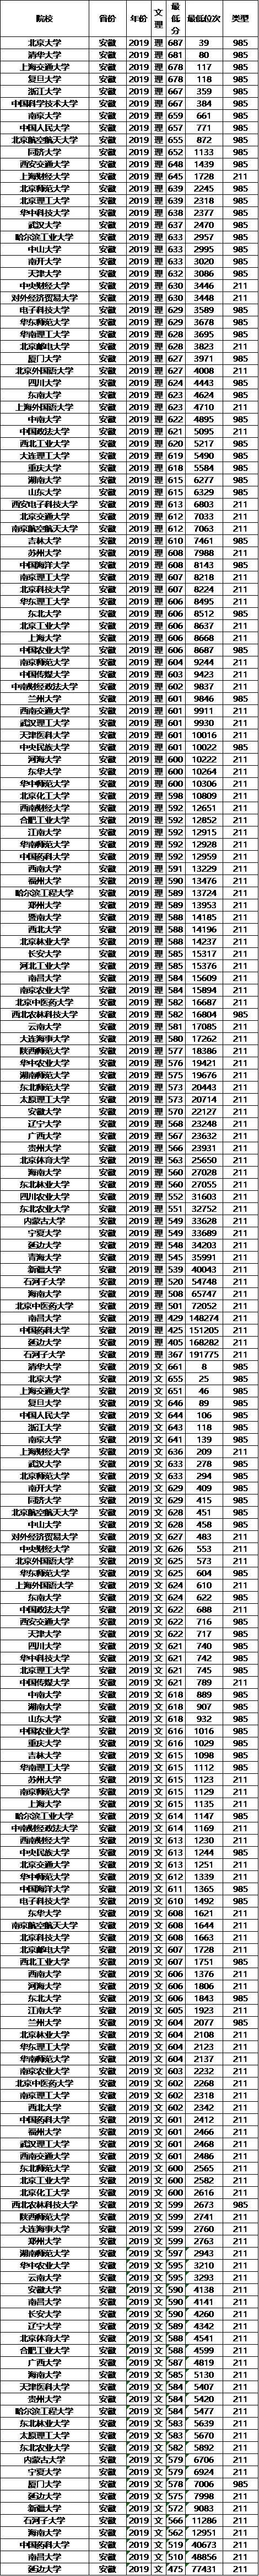 985/211大学2019年安徽录取分数线及位次排名